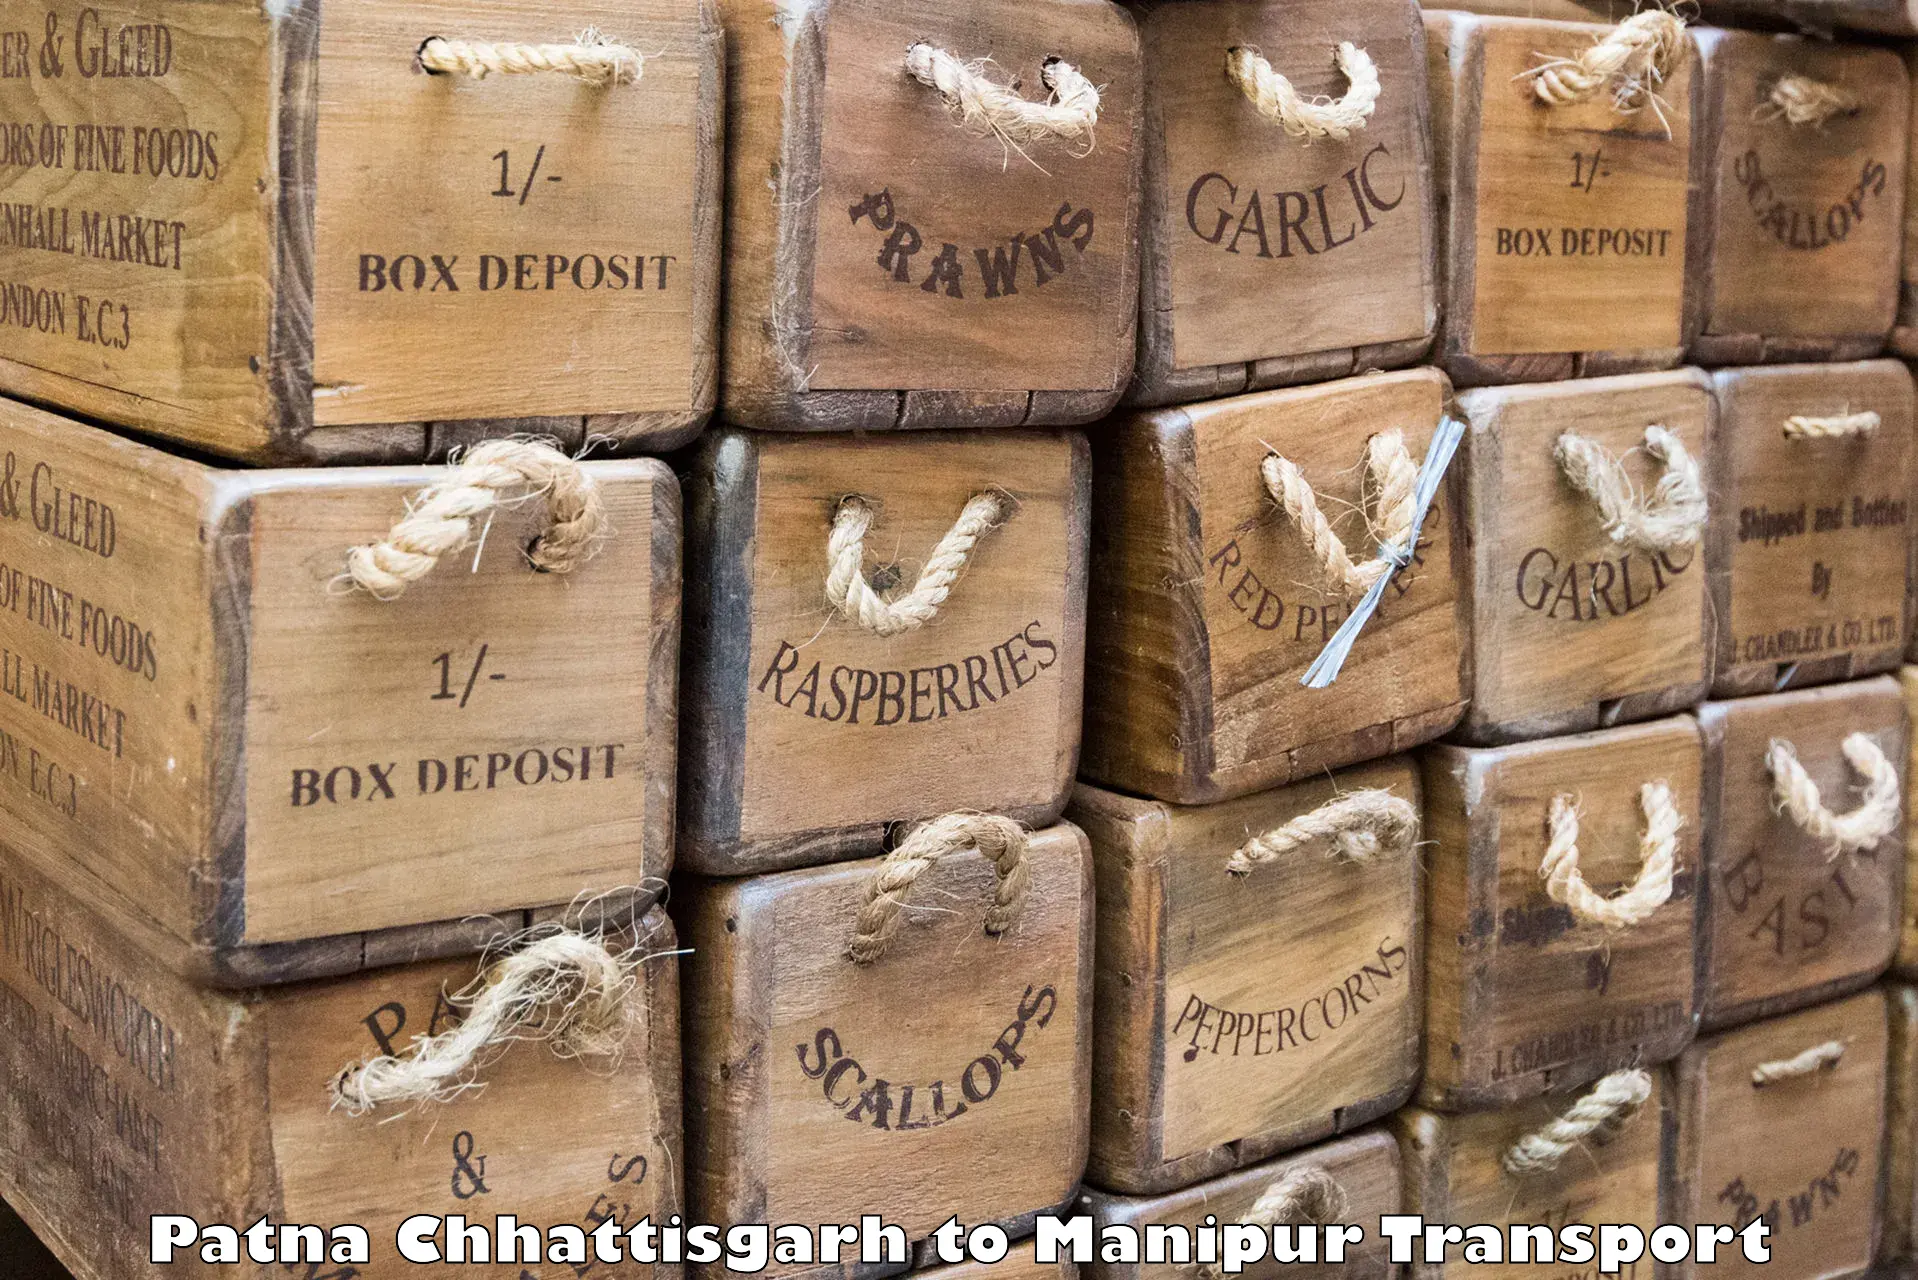 Shipping services Patna Chhattisgarh to Moirang